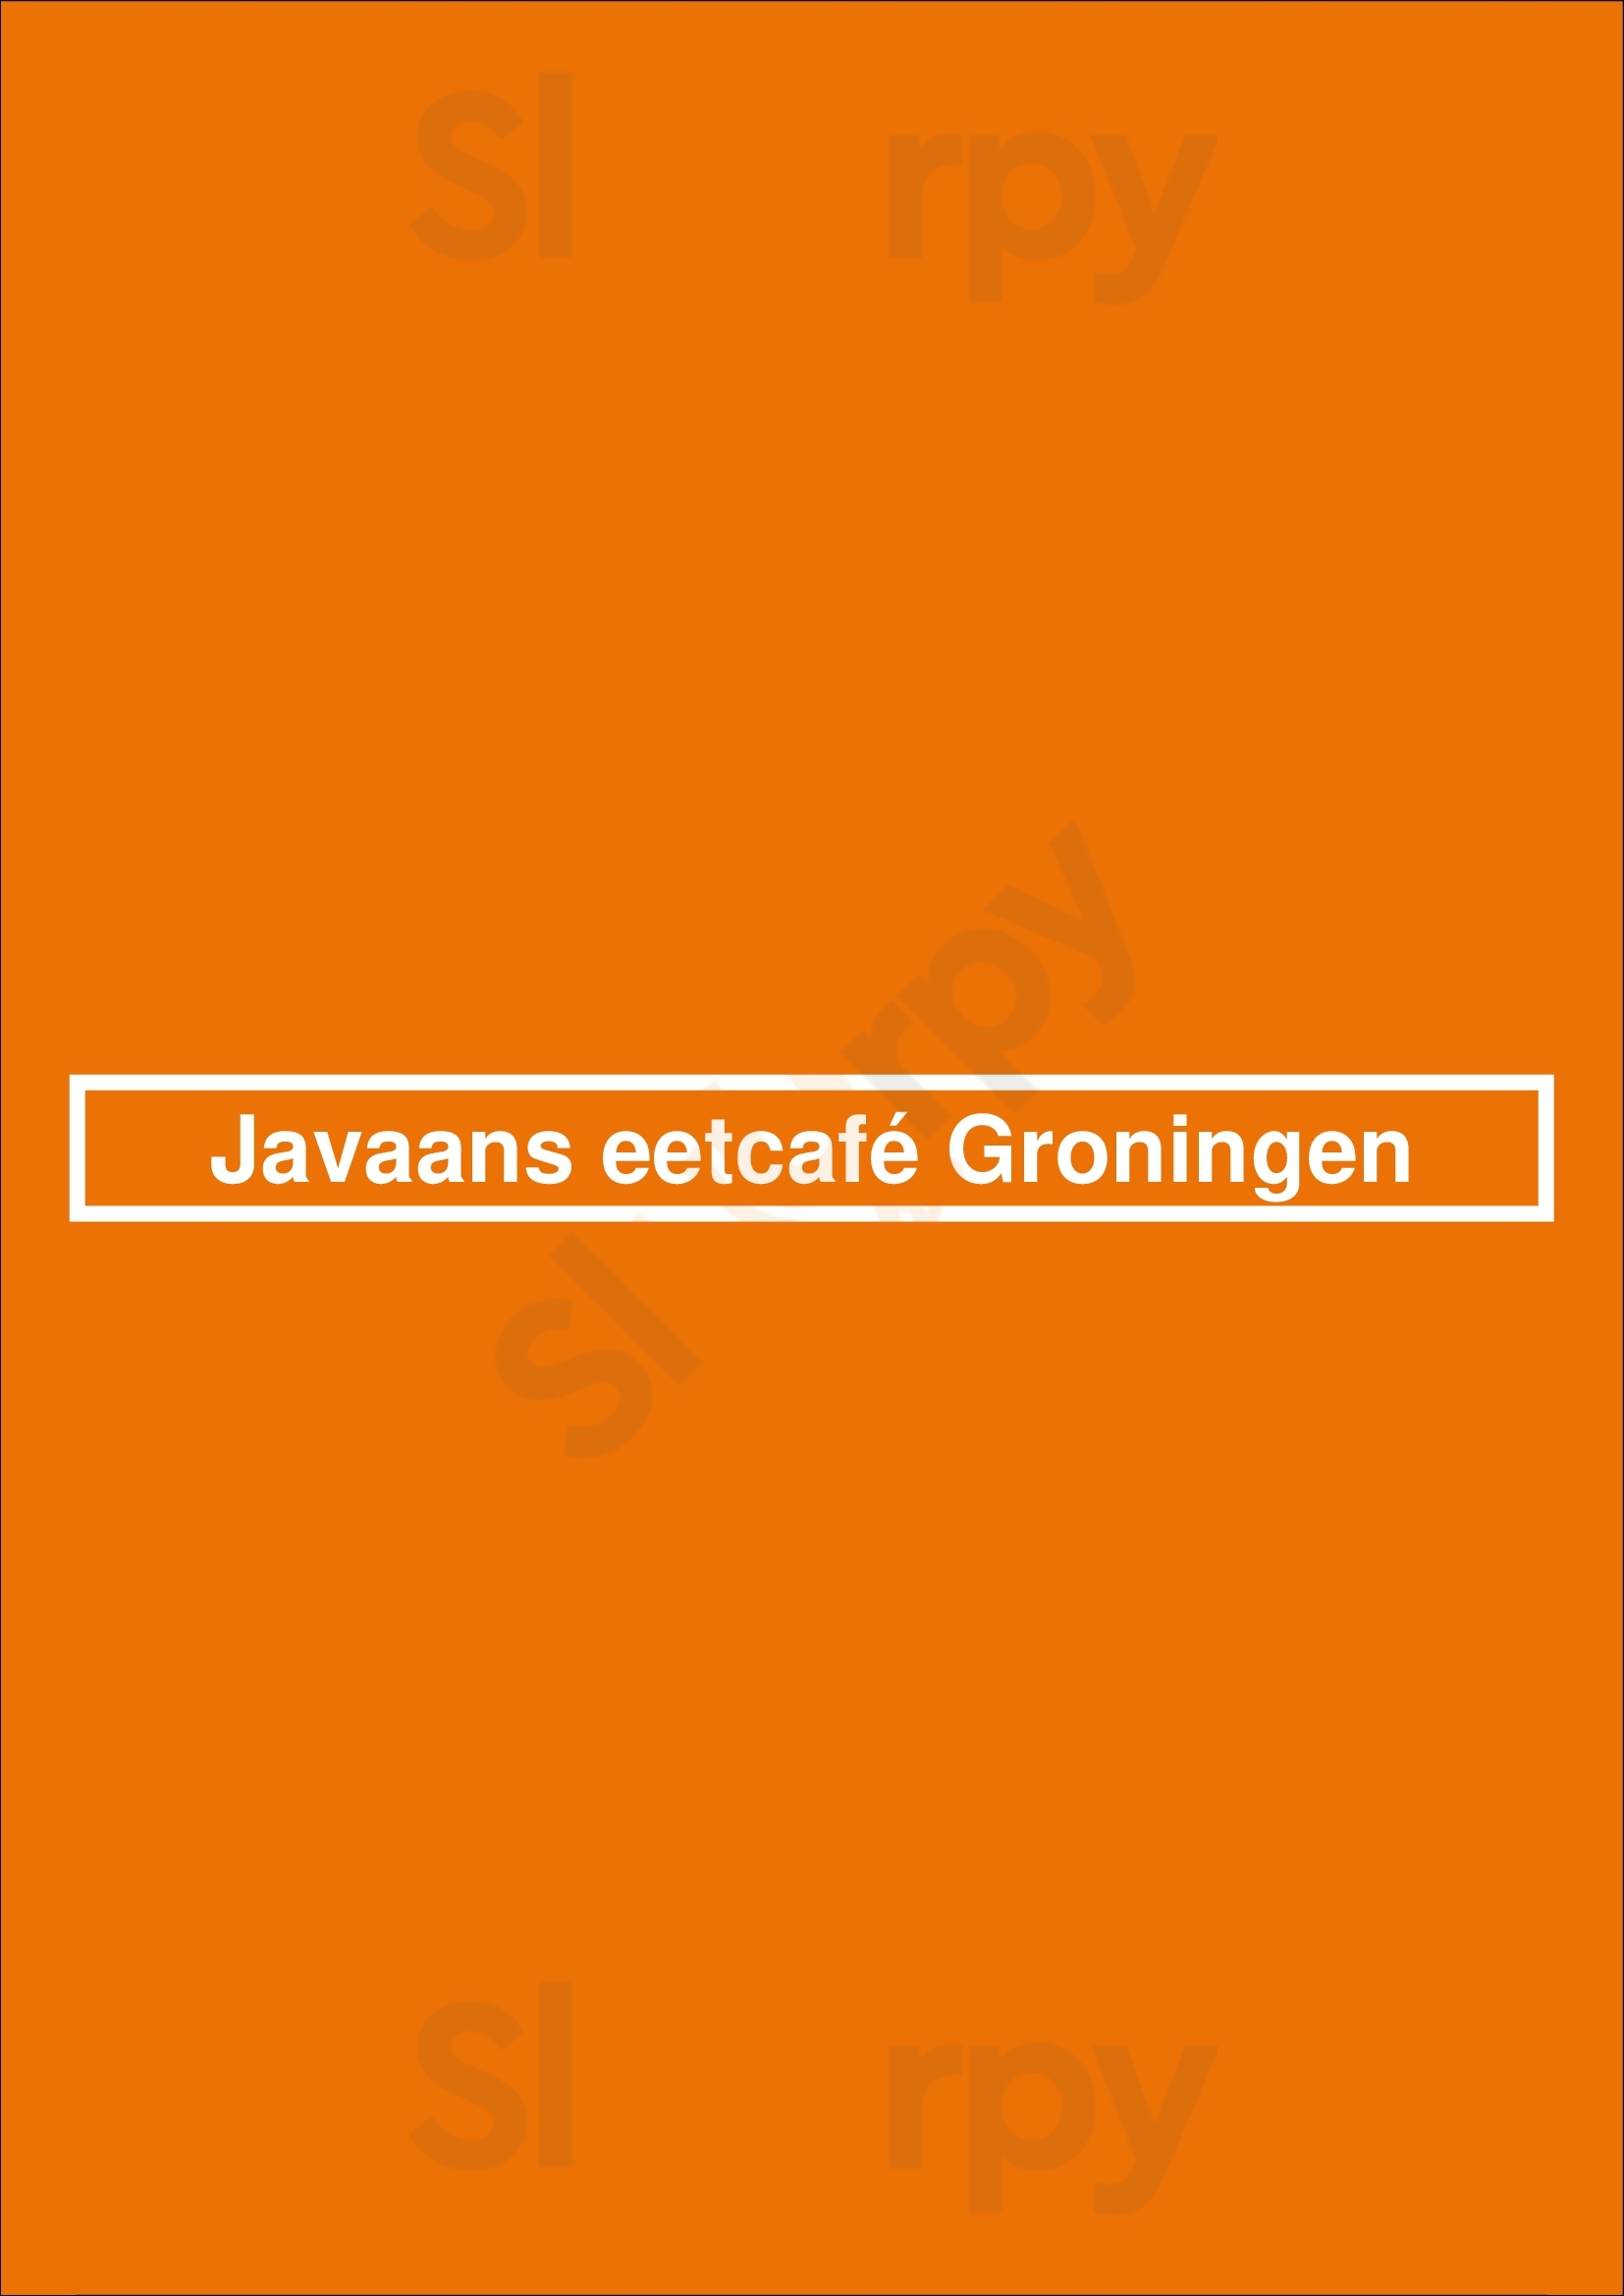 Javaans Eetcafé Groningen Groningen Menu - 1